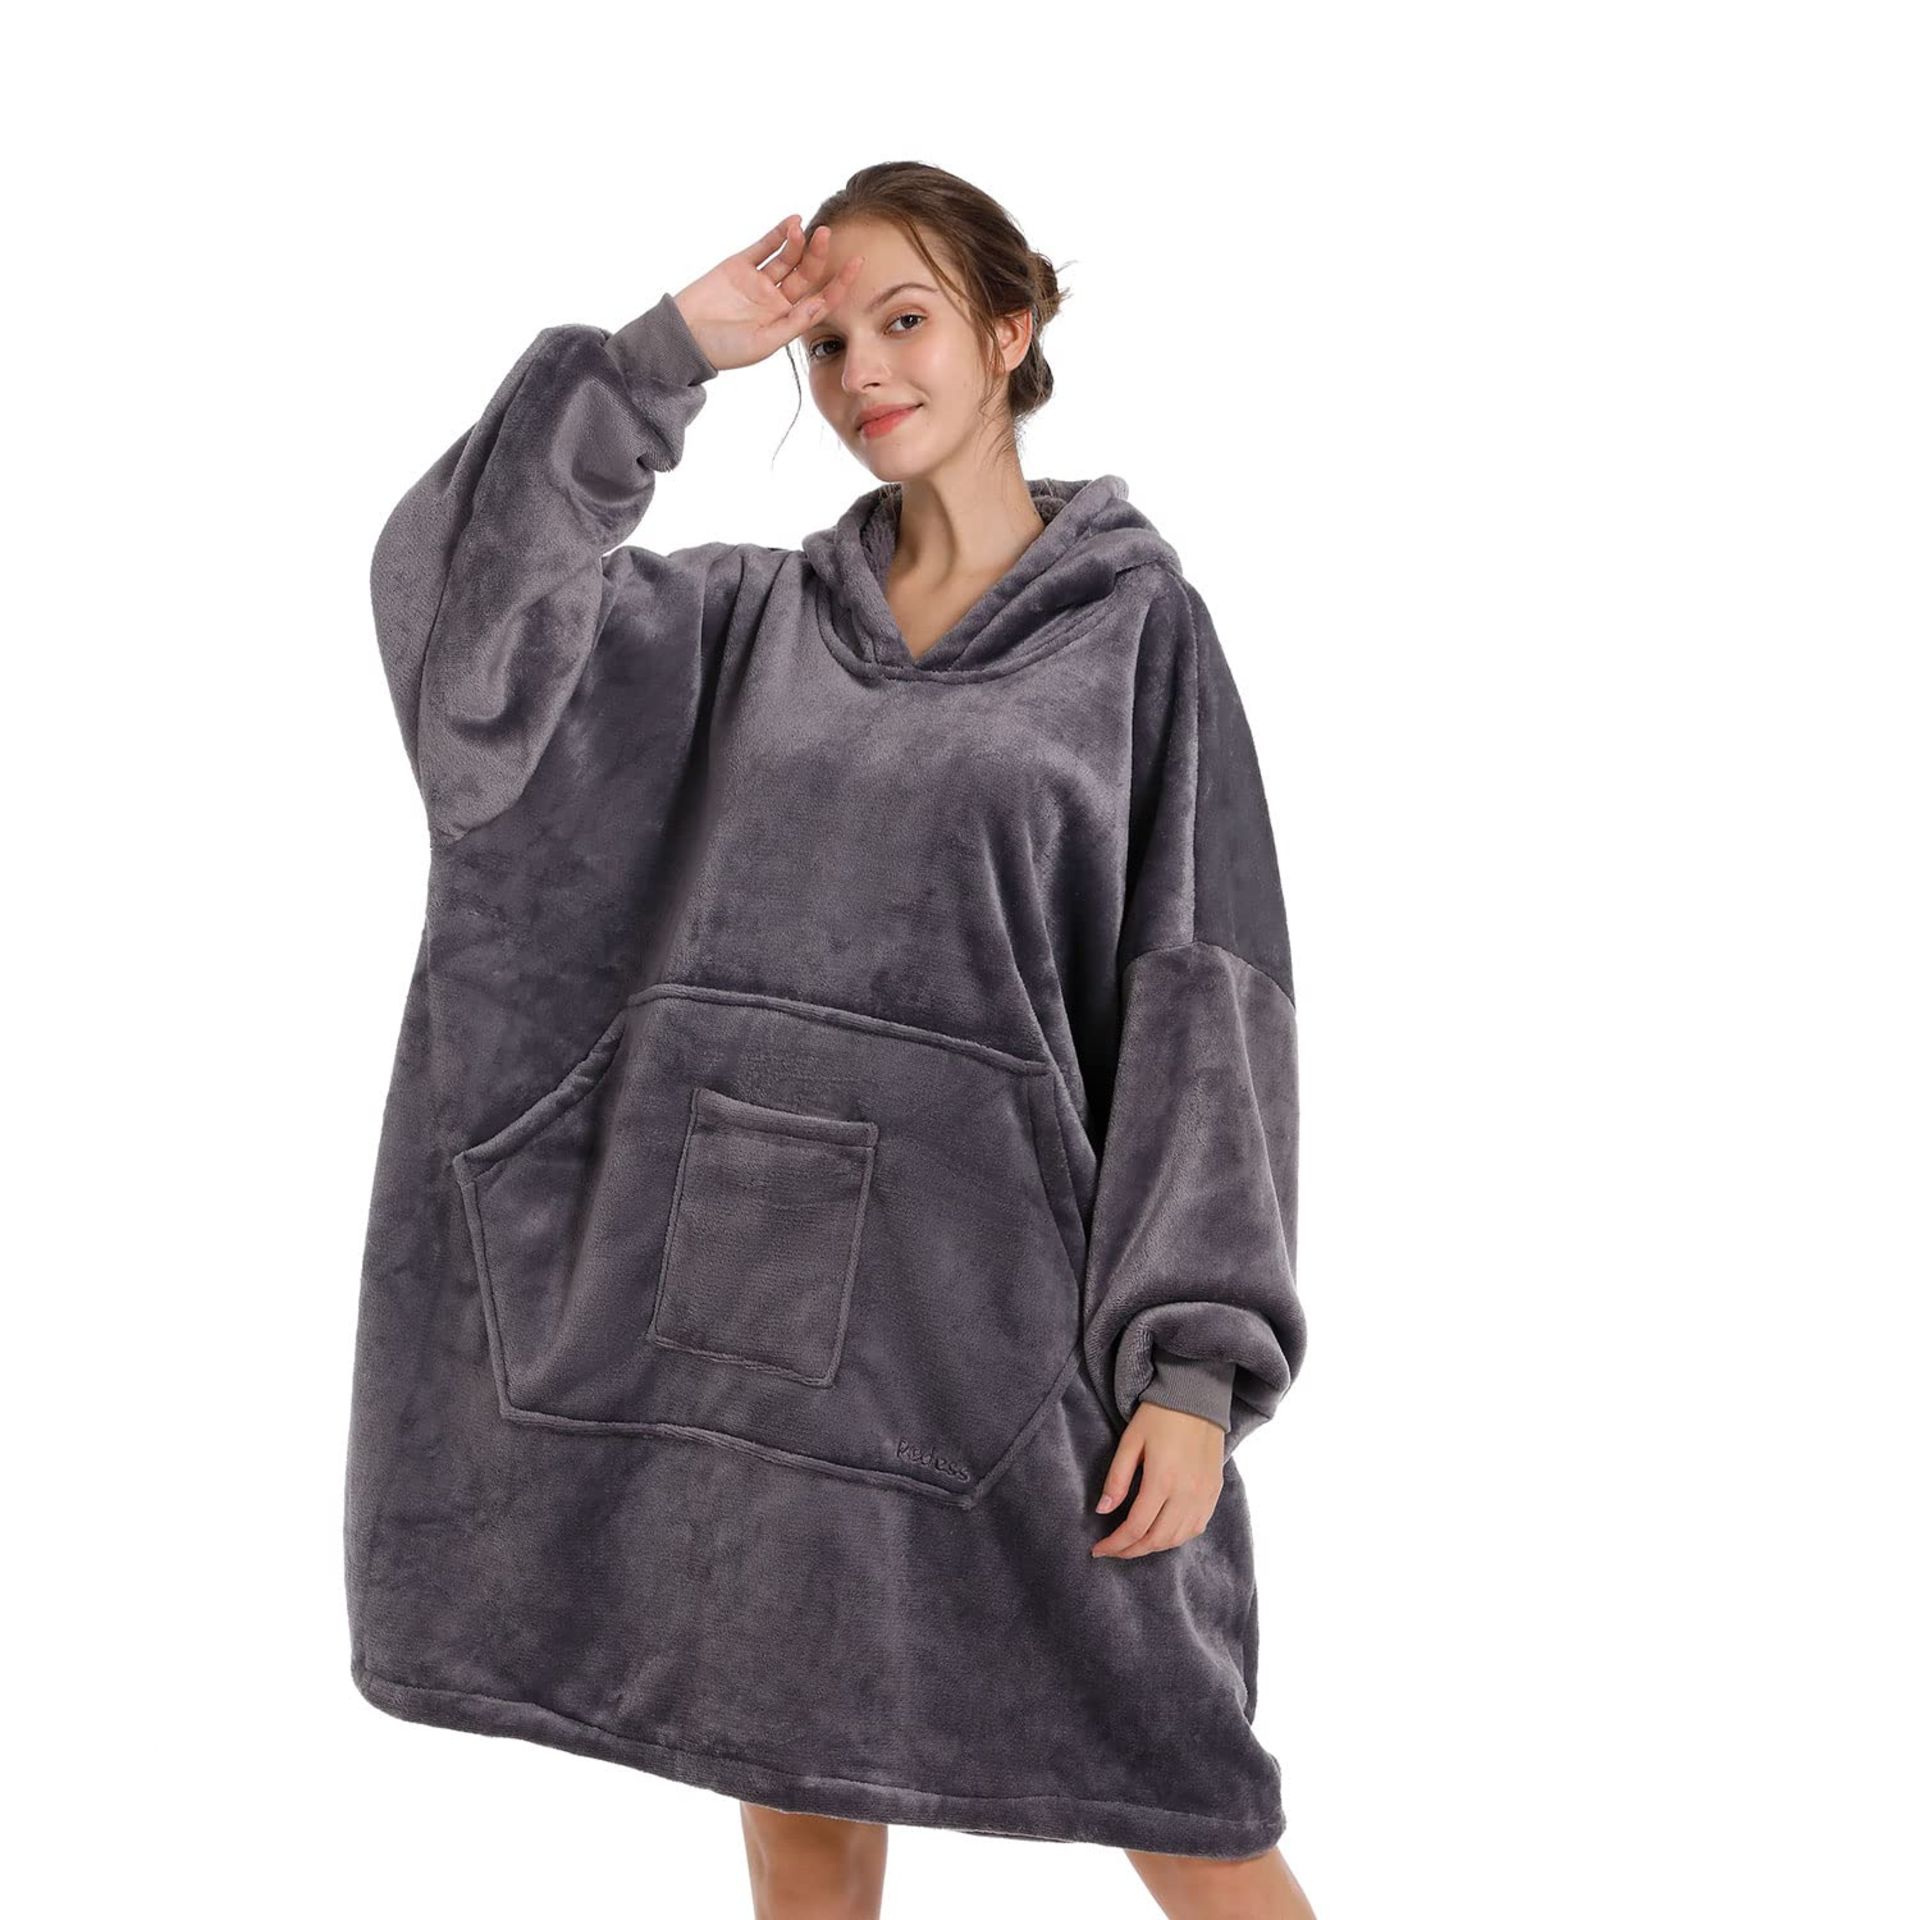 RRP £27.39 REDESS Blanket Hoodie Sweatshirt - Image 2 of 4